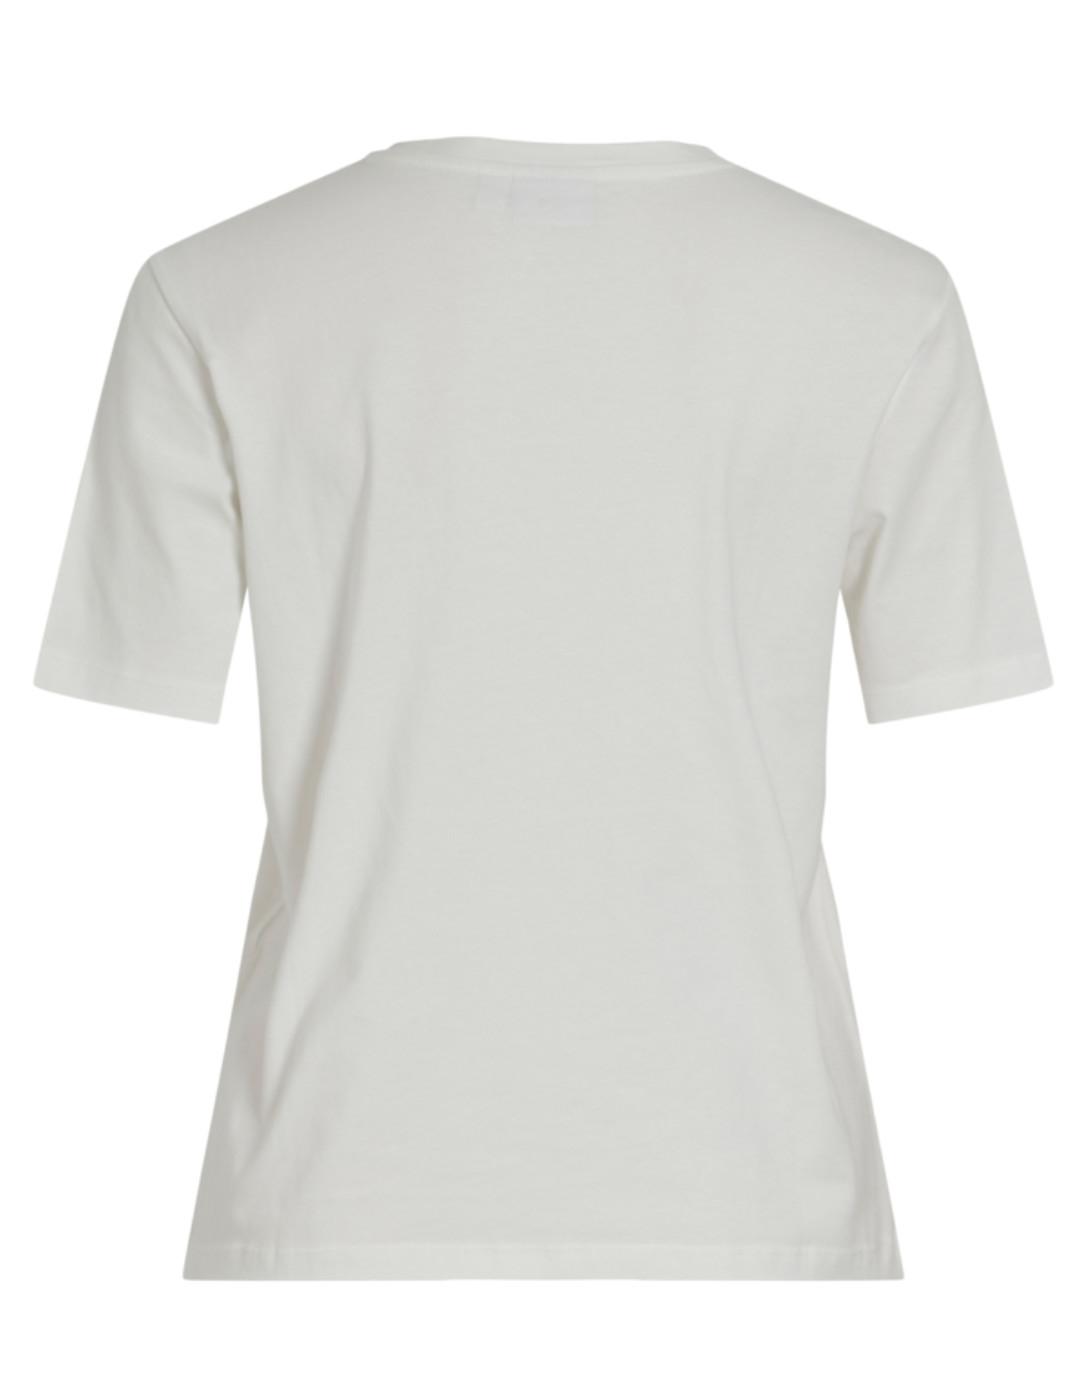 Camiseta Vila Sybil Soul blanca manga corta para mujer